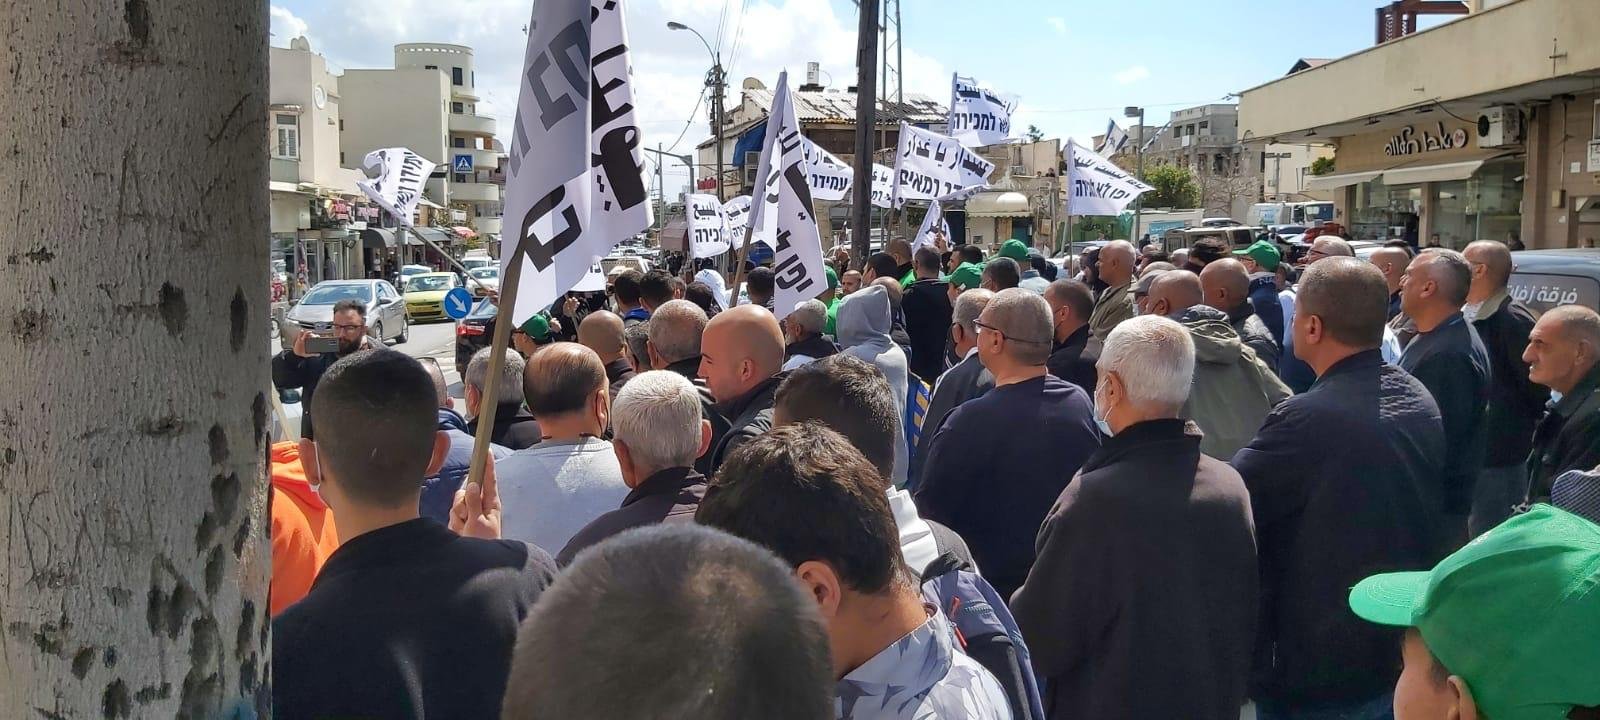 يافا: للأسبوع السادس على التوالي الأهالي يتظاهرون ضد سياسات شركة العميدار-0